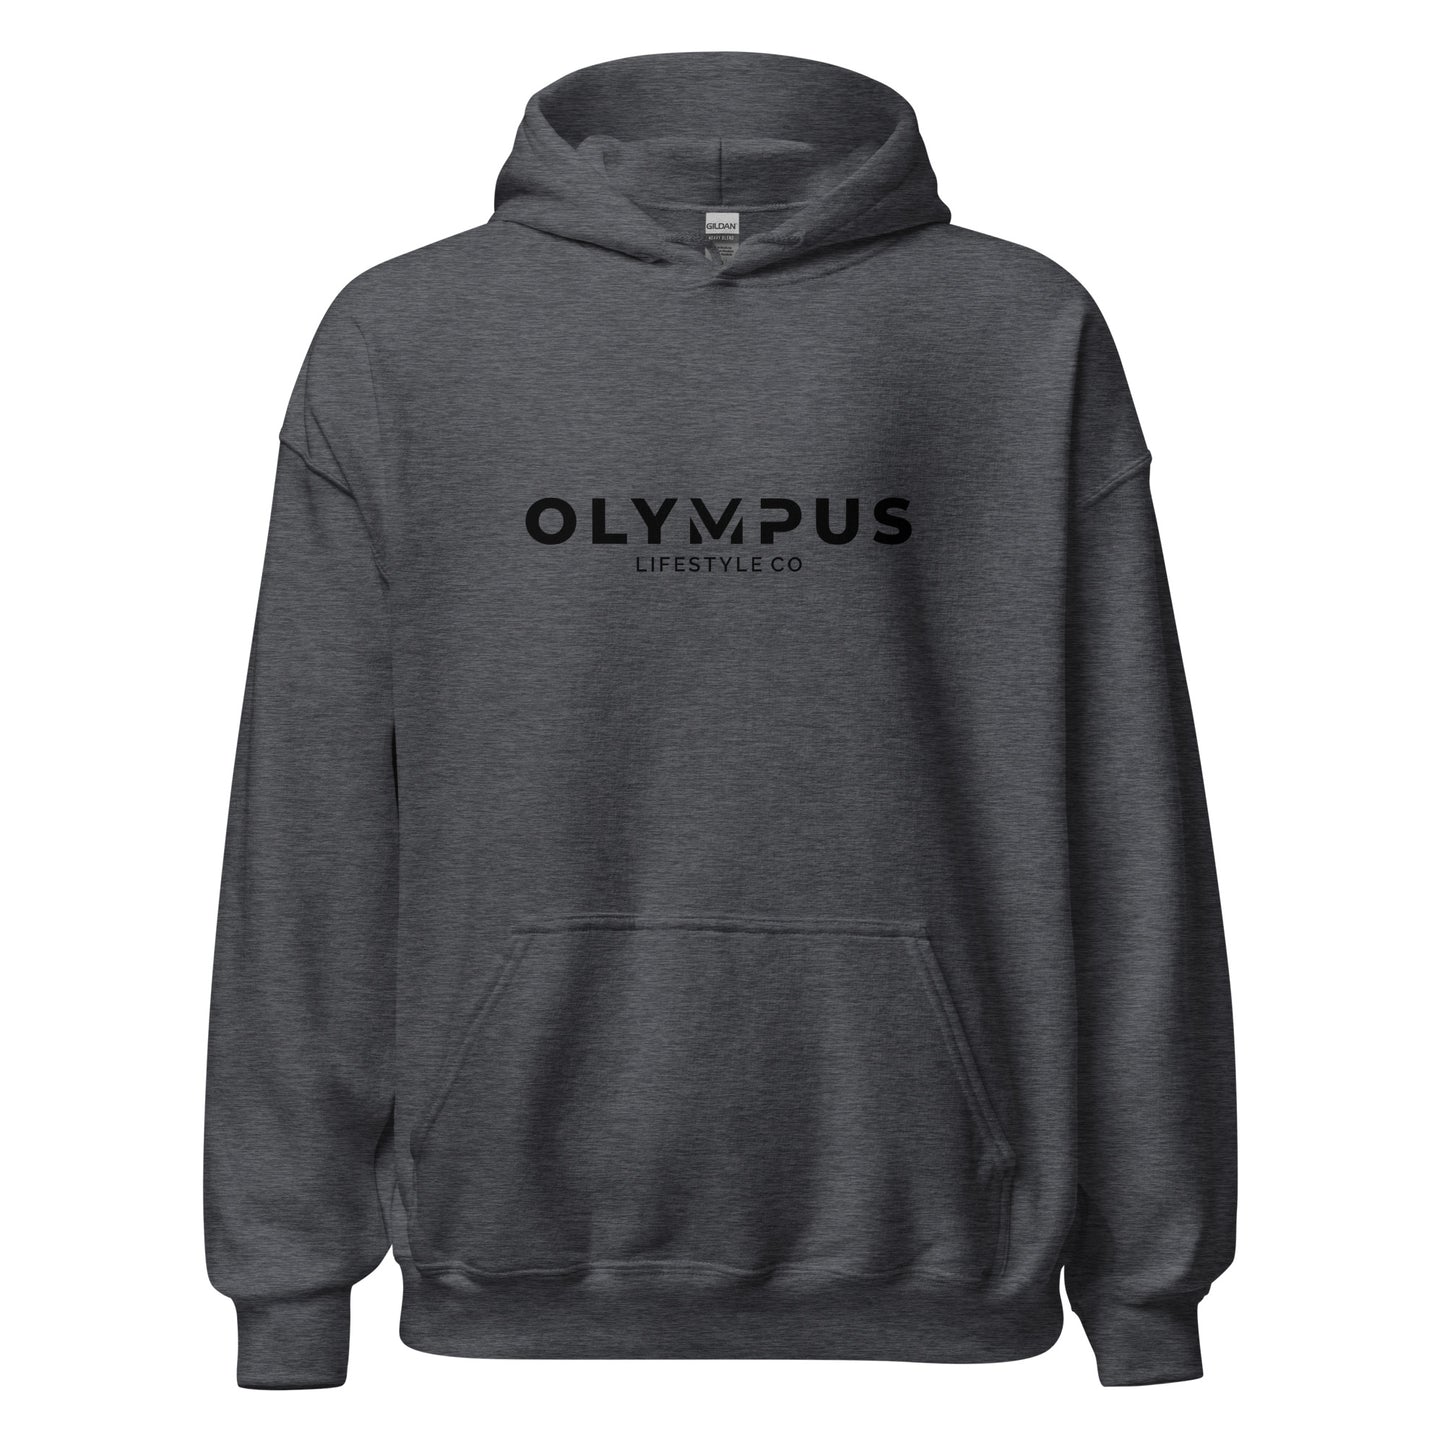 Olympus Women's Printed Hoodie Black Text Logo